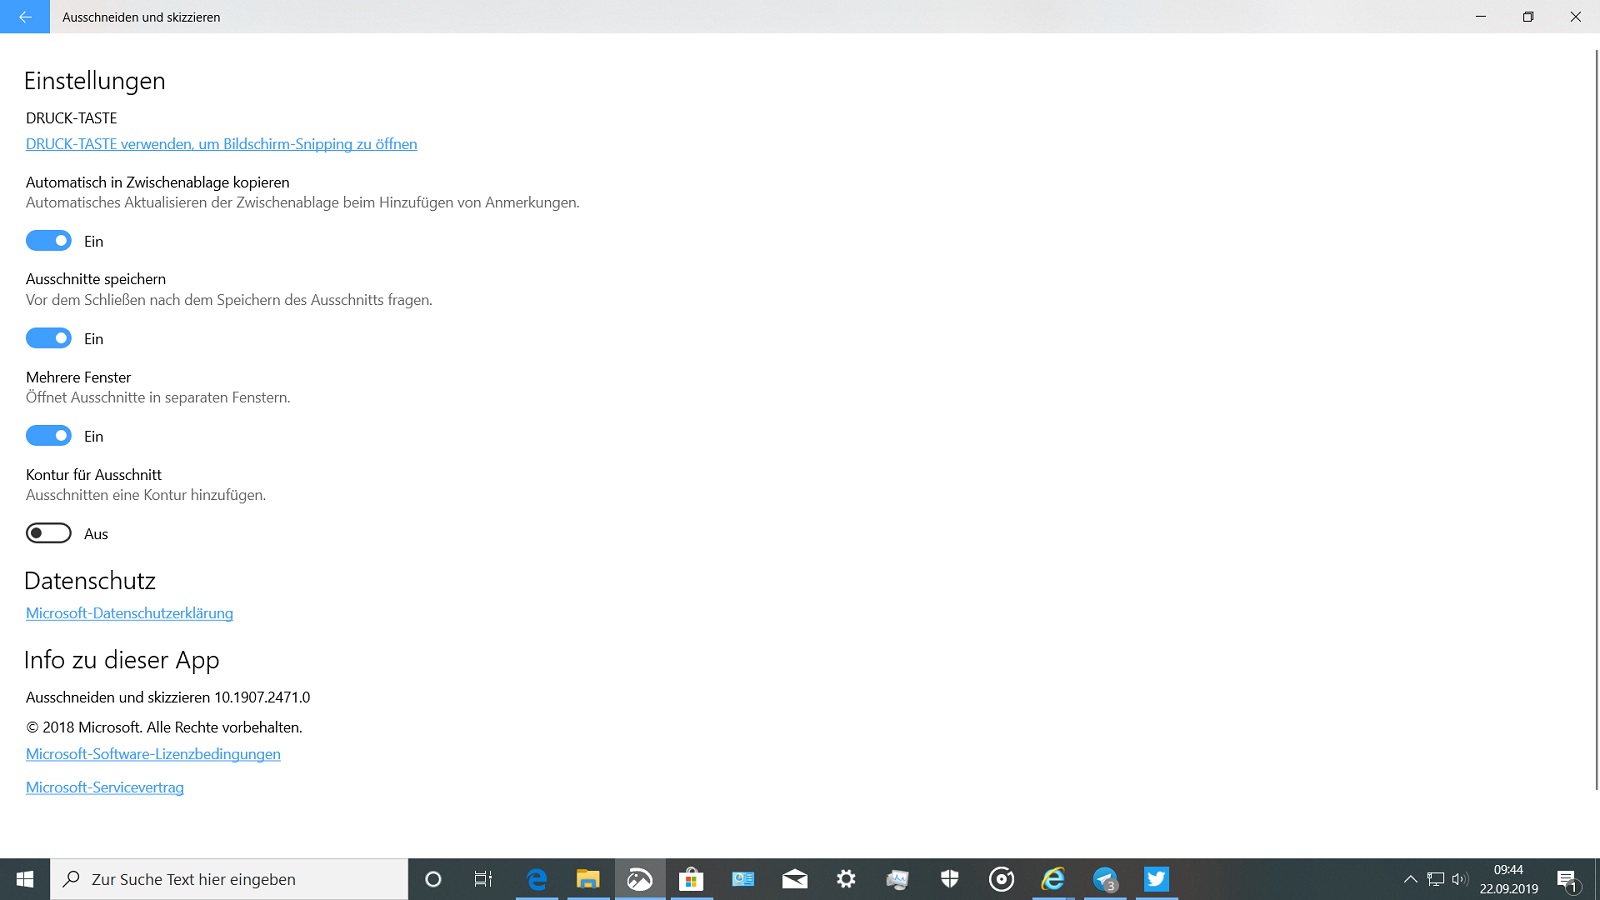 App Update Ausschneiden Und Skizzieren Version 10 1907 2471 0 Windows Love